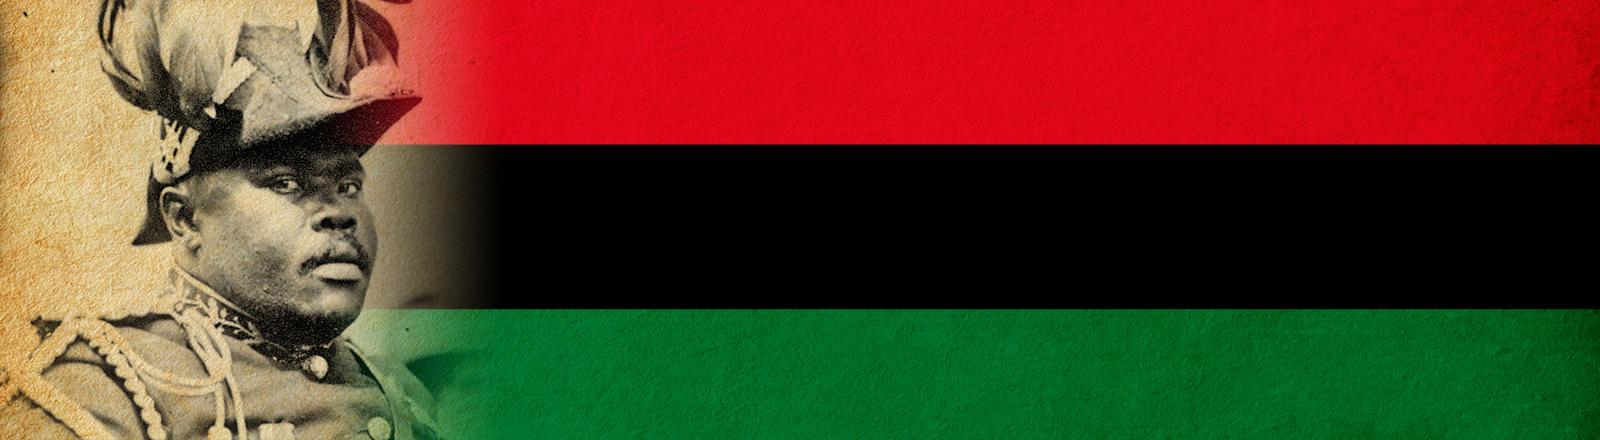 非洲国旗和马库斯·加维